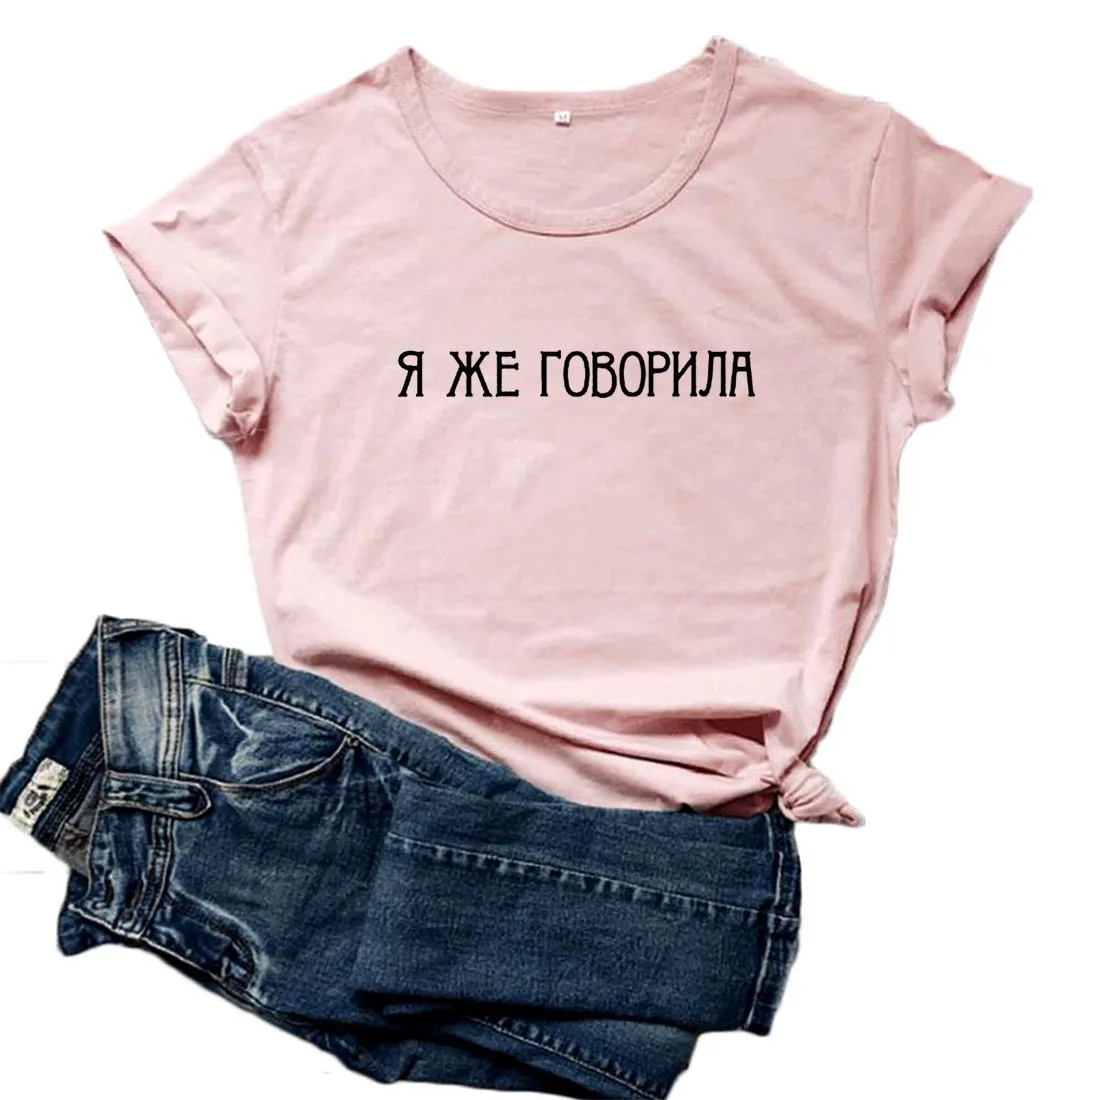 

Я ответил вам футболка Для женщин принт в виде русских букв футболка женская короткий рукав забавная футболка Для женщин хлопок Camisetas Mujer То...